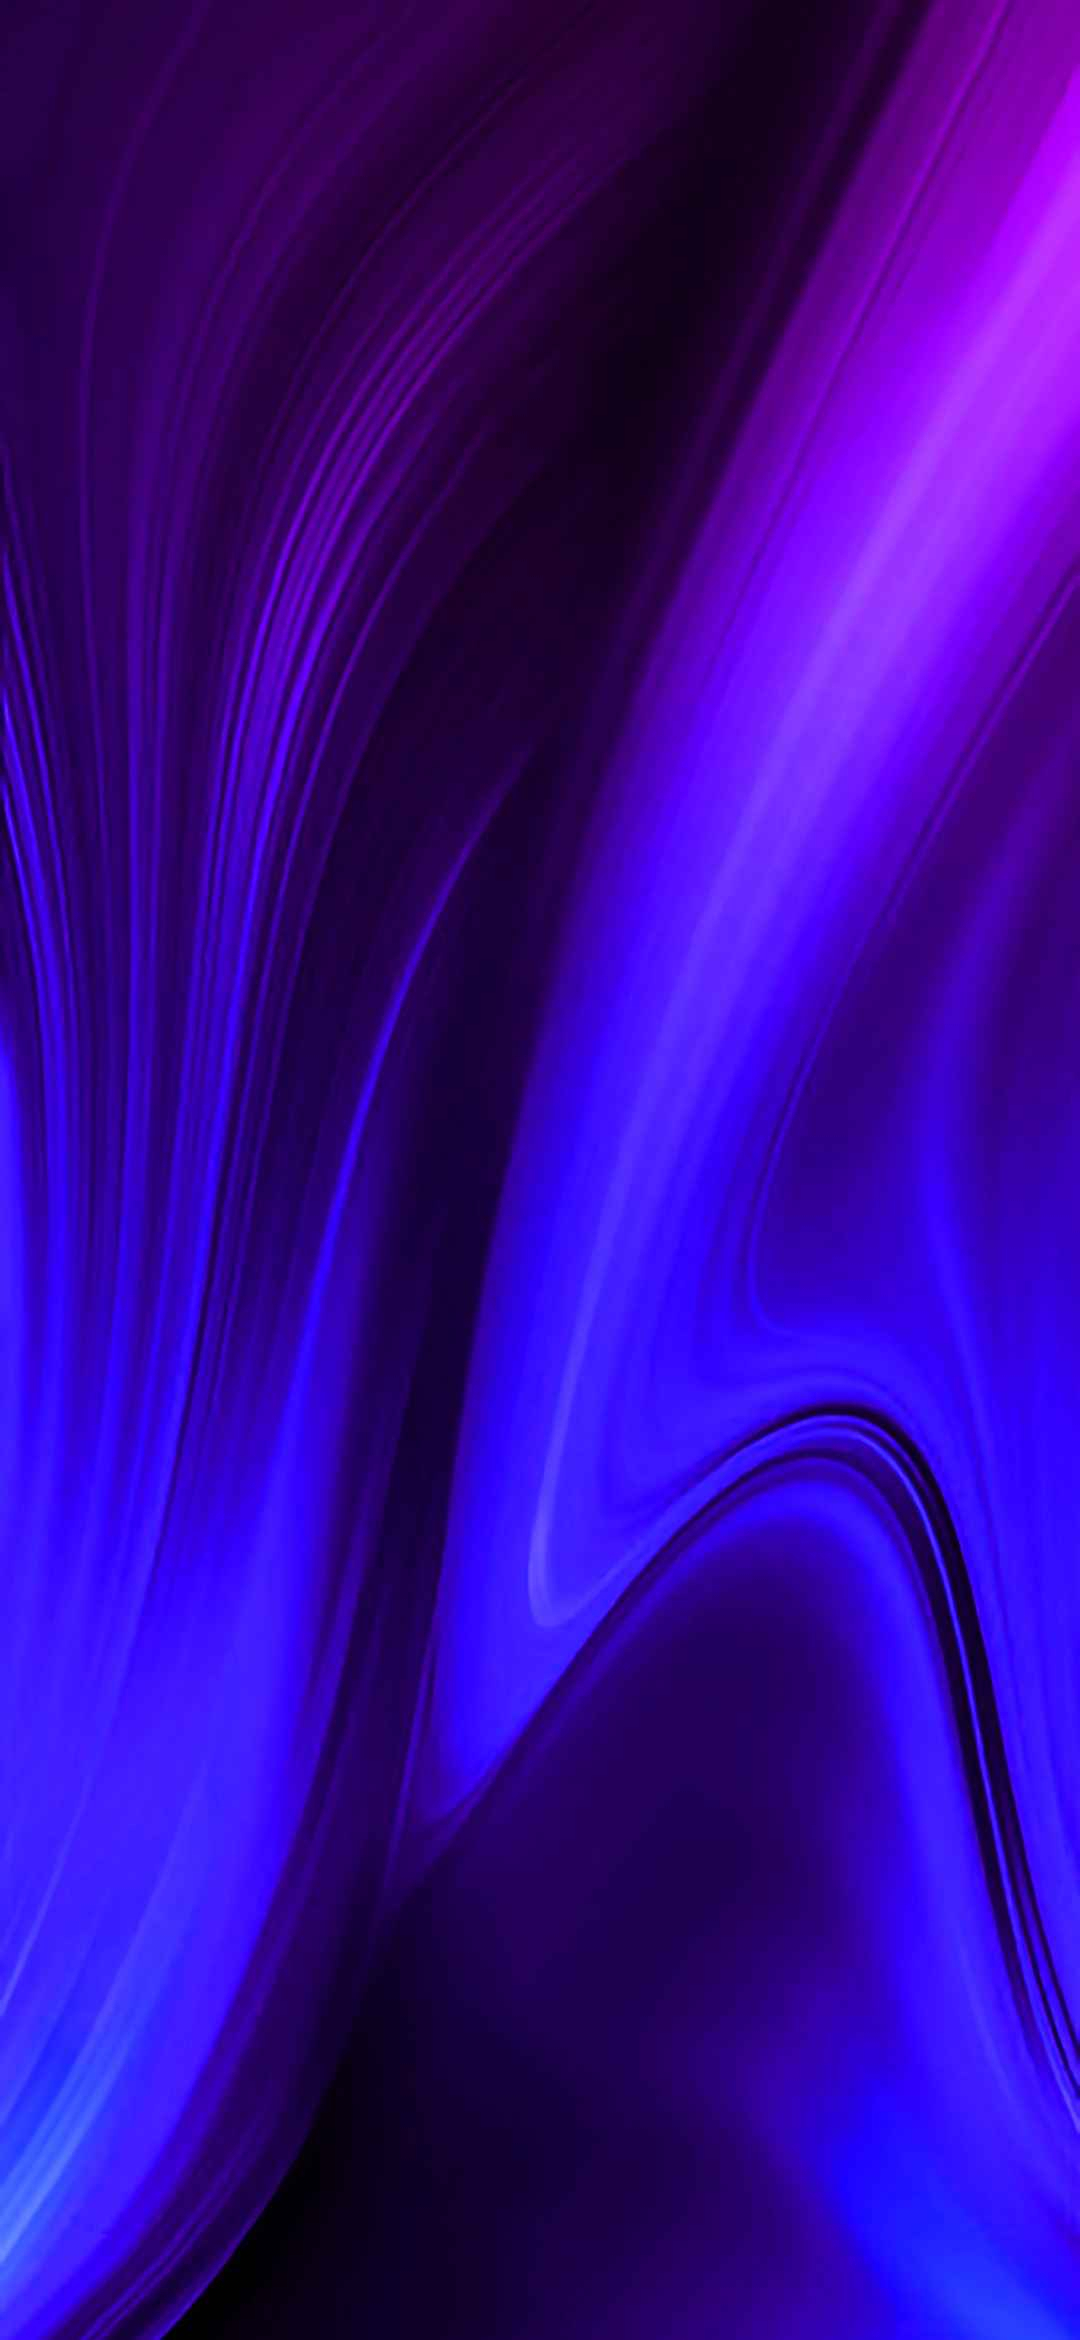 samsung galaxy grand prime plus fondo de pantalla,azul,violeta,púrpura,azul eléctrico,ligero